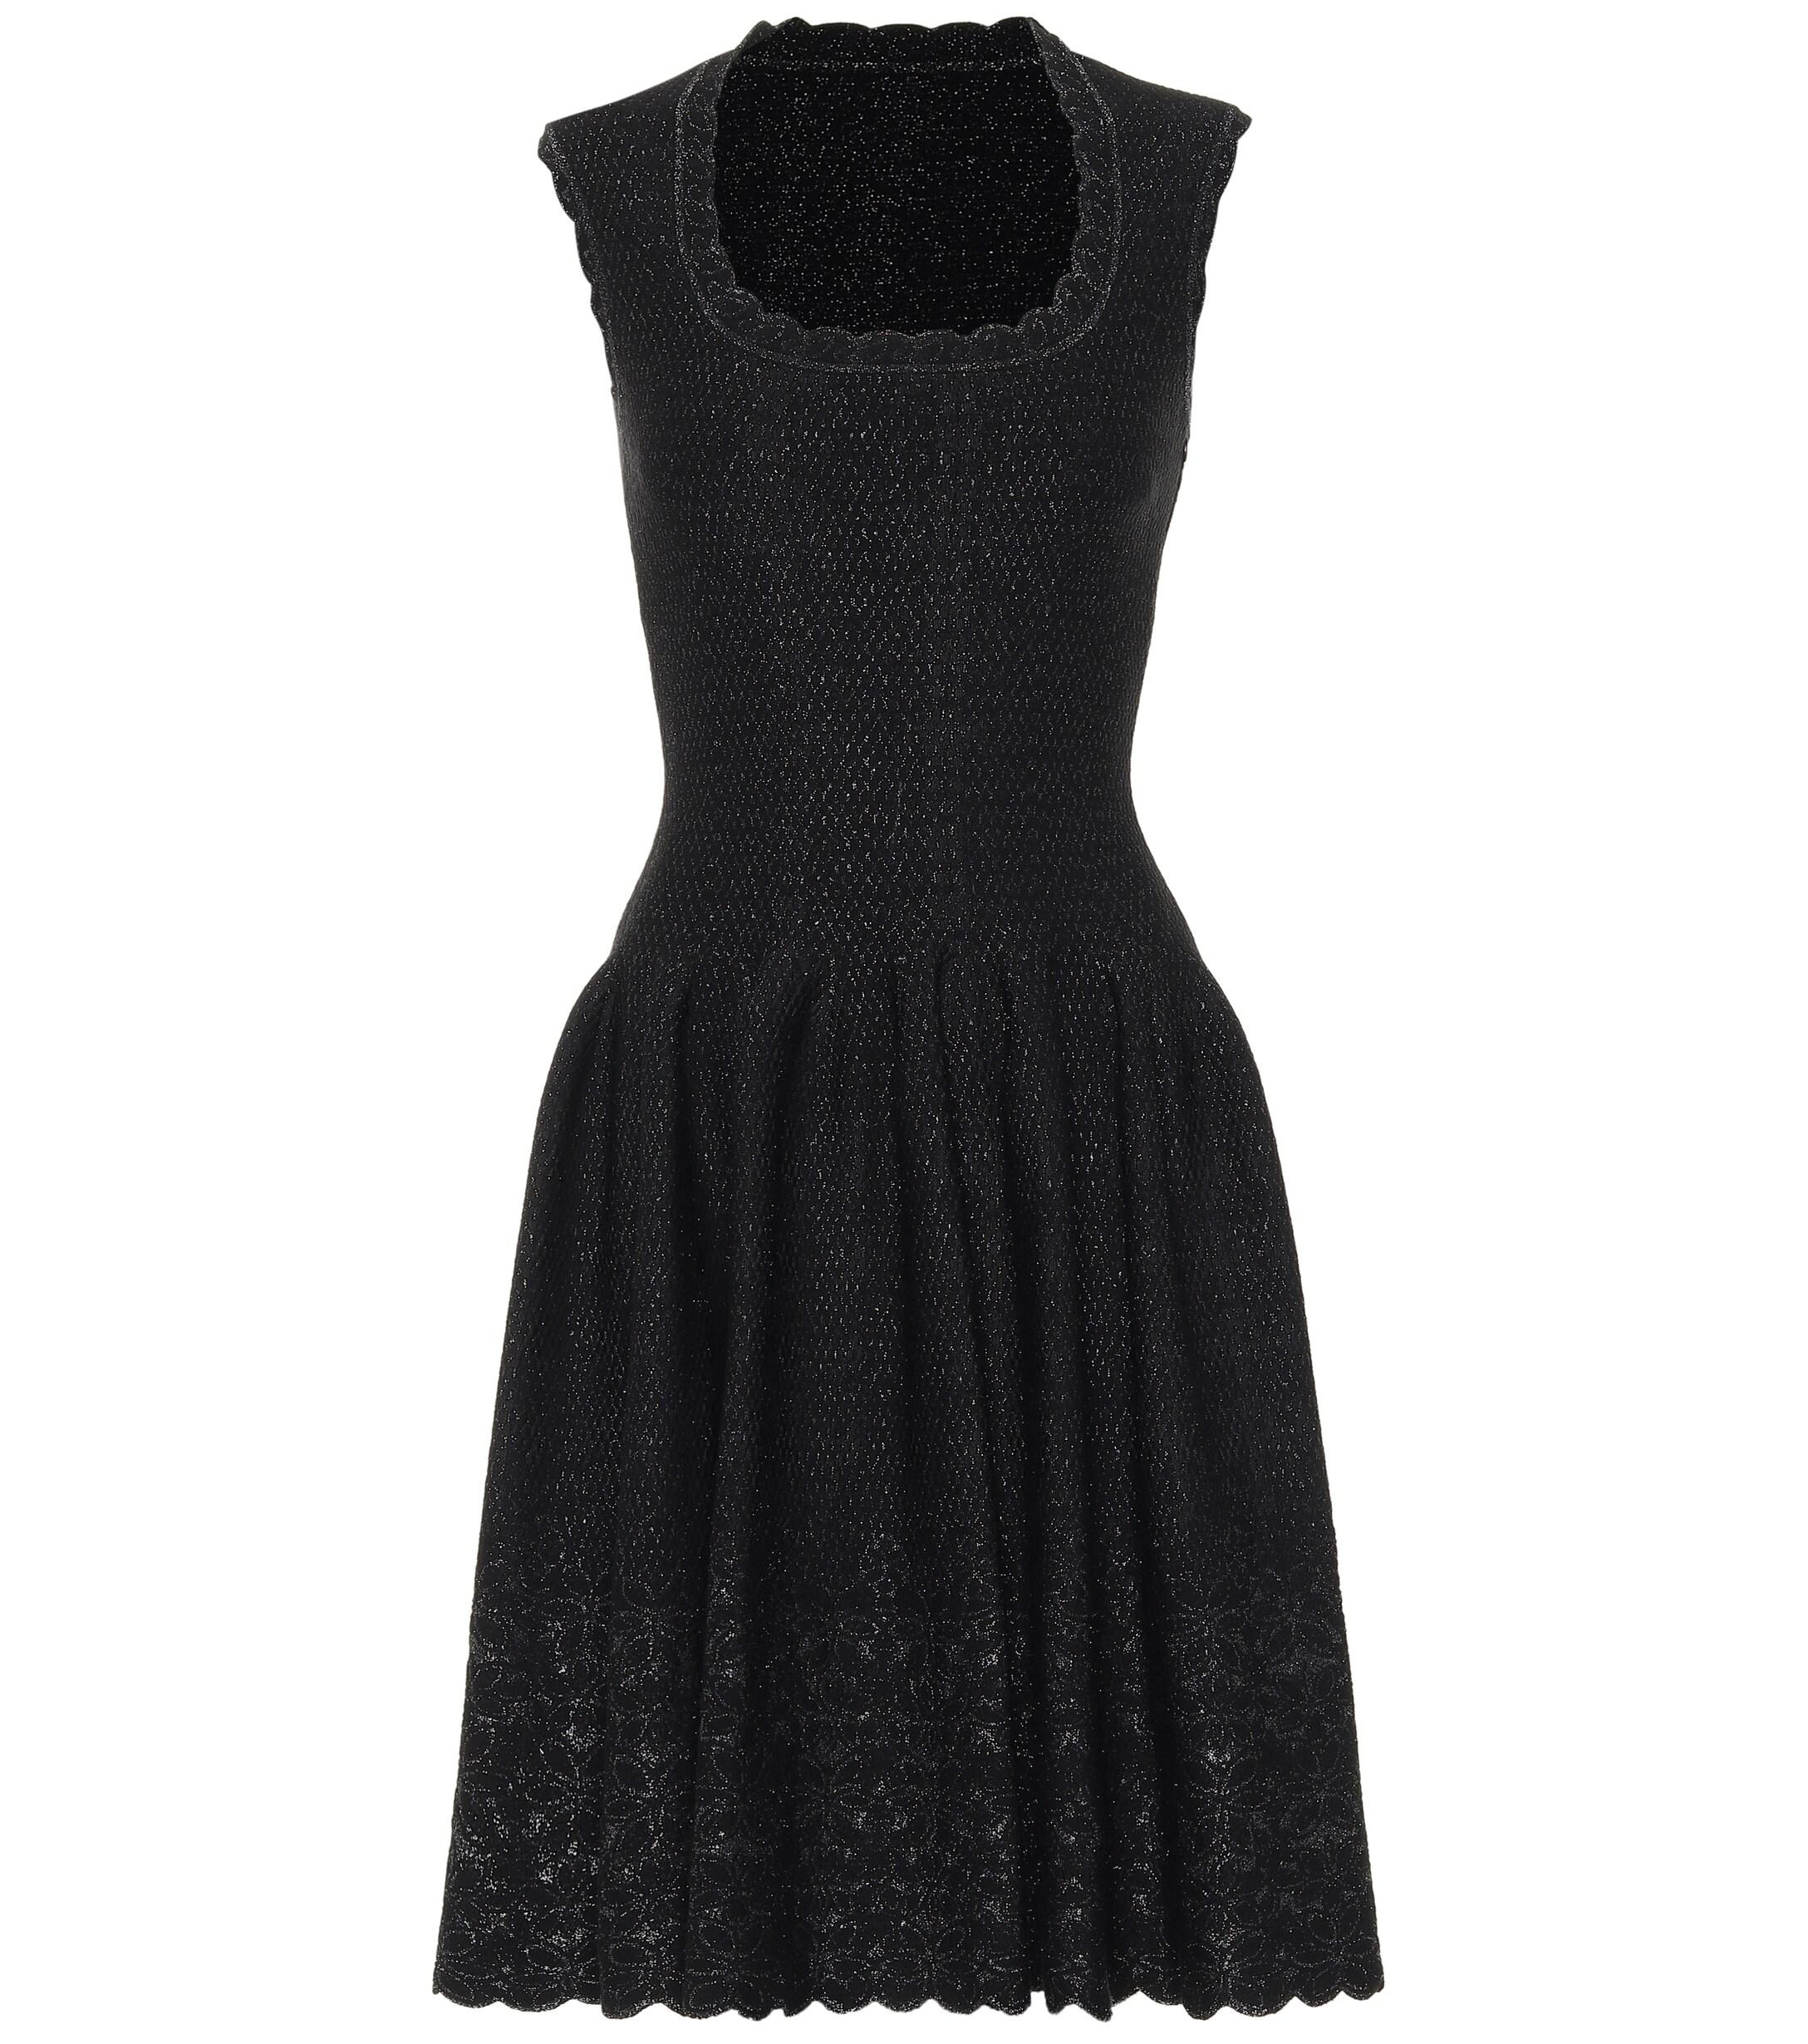 Alaïa Metallic Jacquard Knit Dress in Black - Lyst